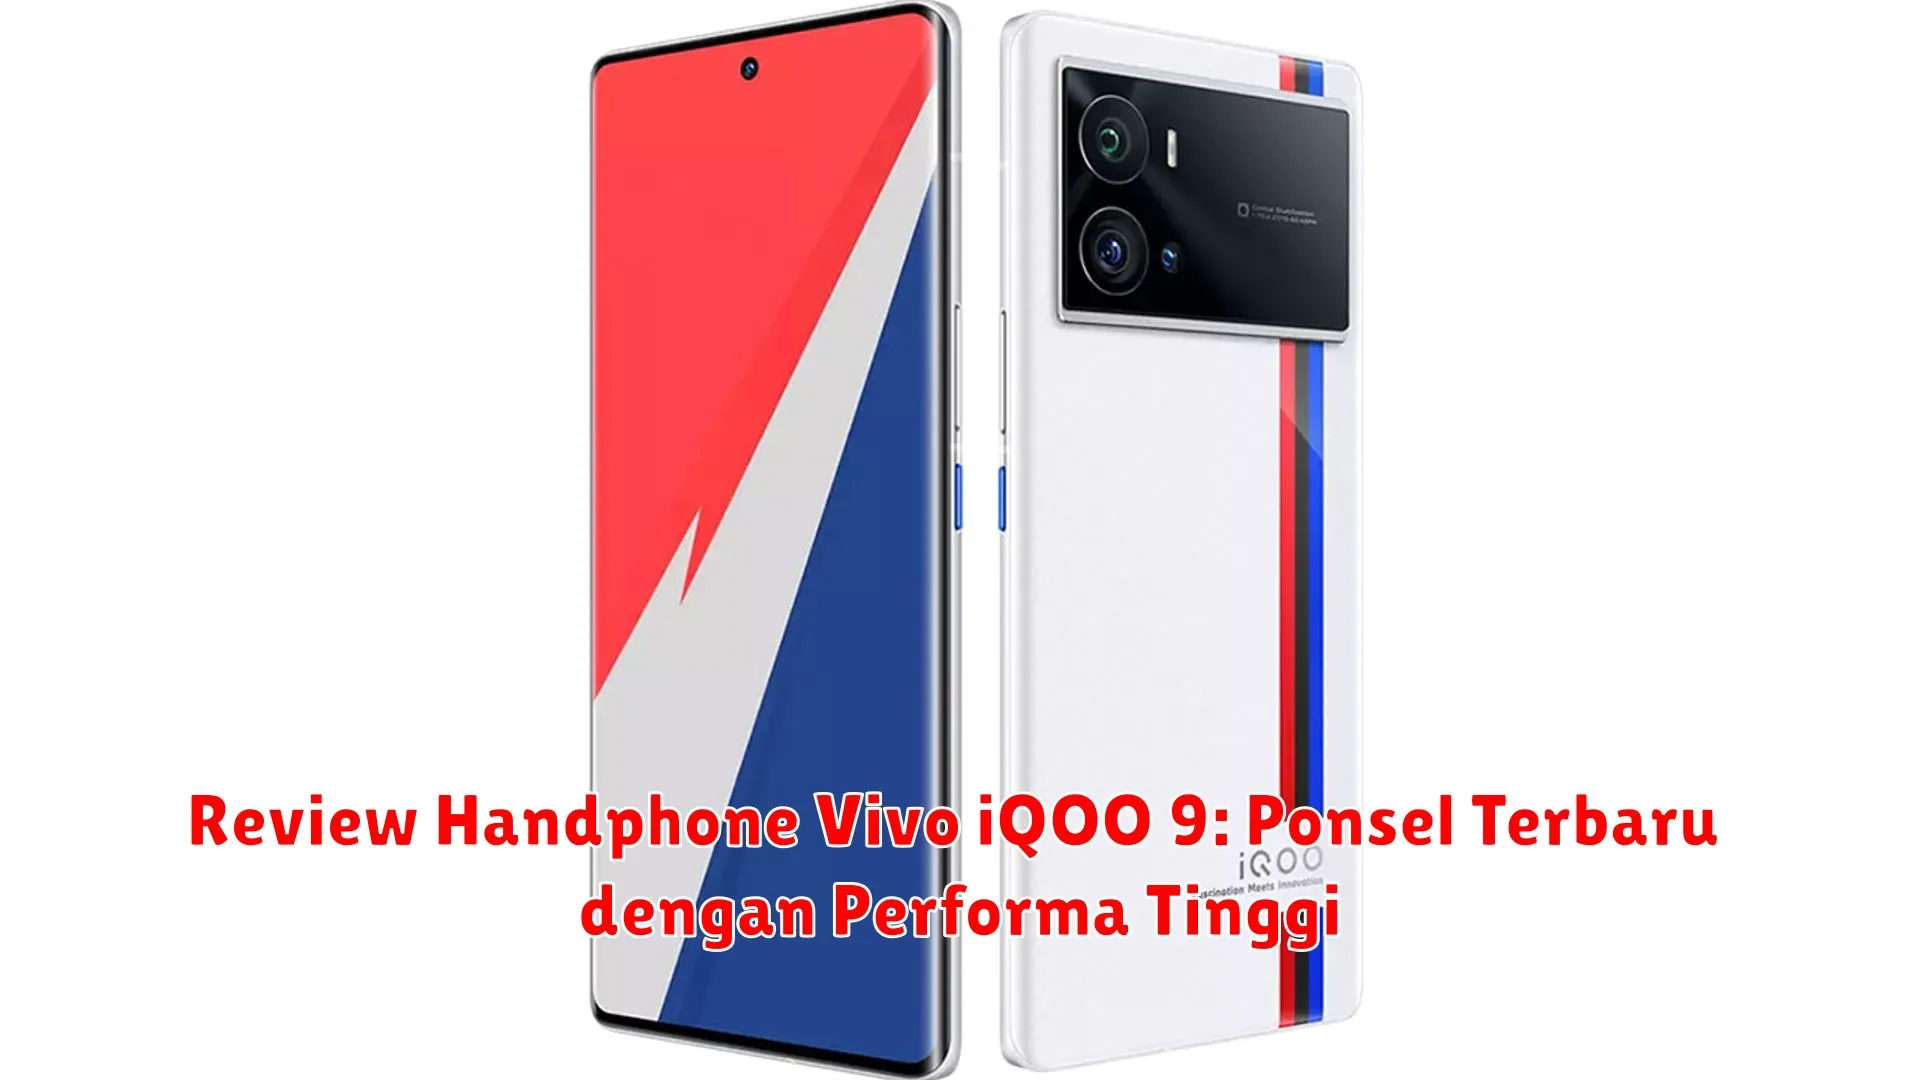 Review Handphone Vivo iQOO 9: Ponsel Terbaru dengan Performa Tinggi